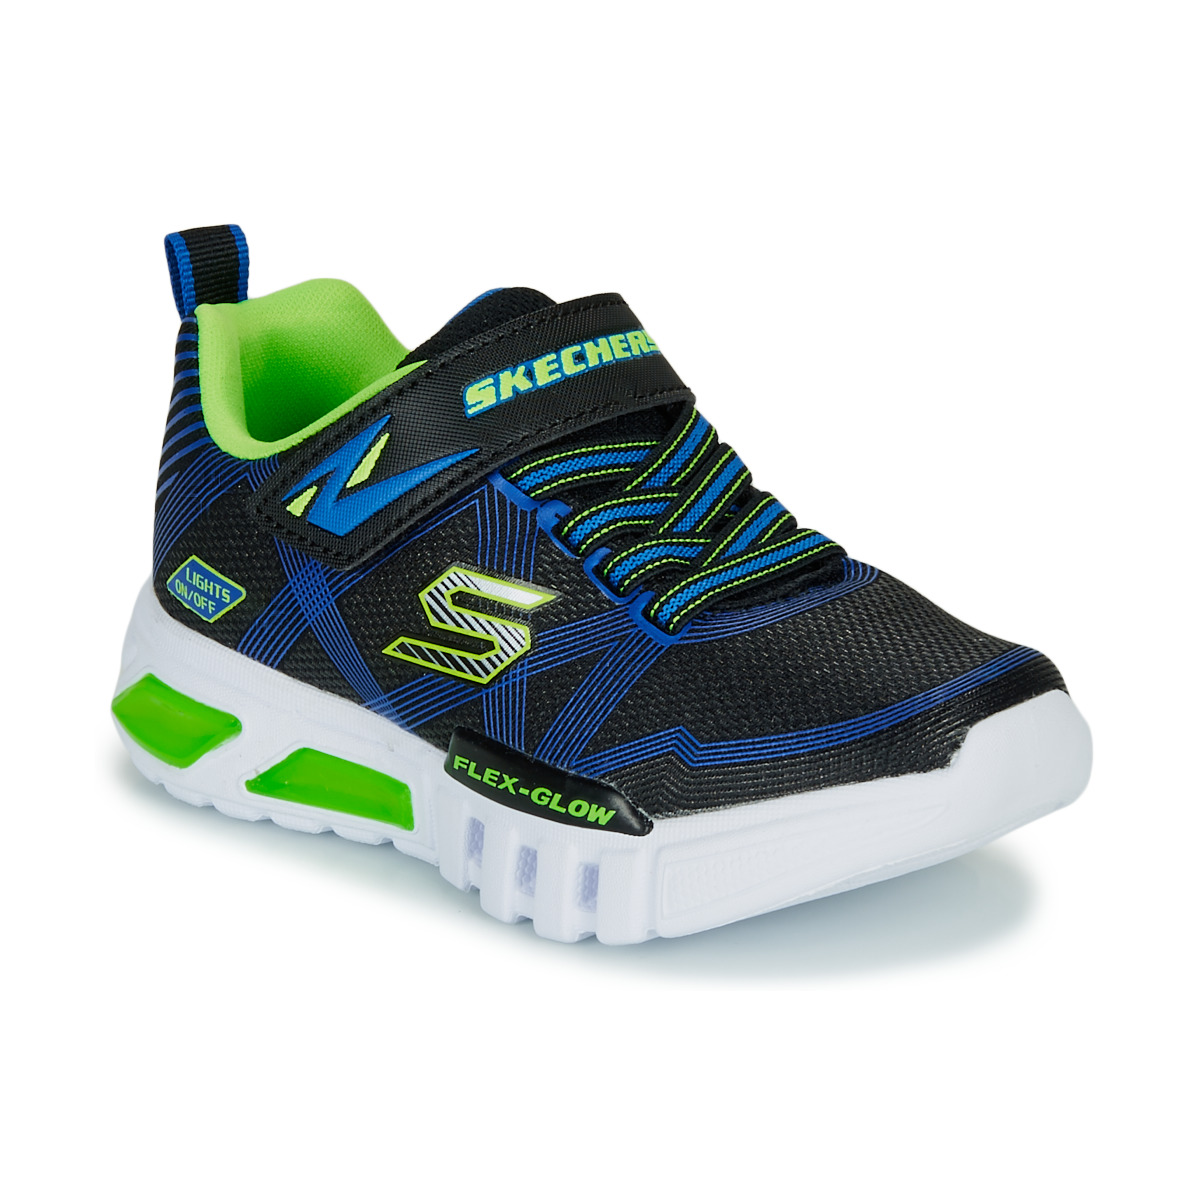 Cipők Fiú Rövid szárú edzőcipők Skechers SKECHERS BOY Kék / Zöld